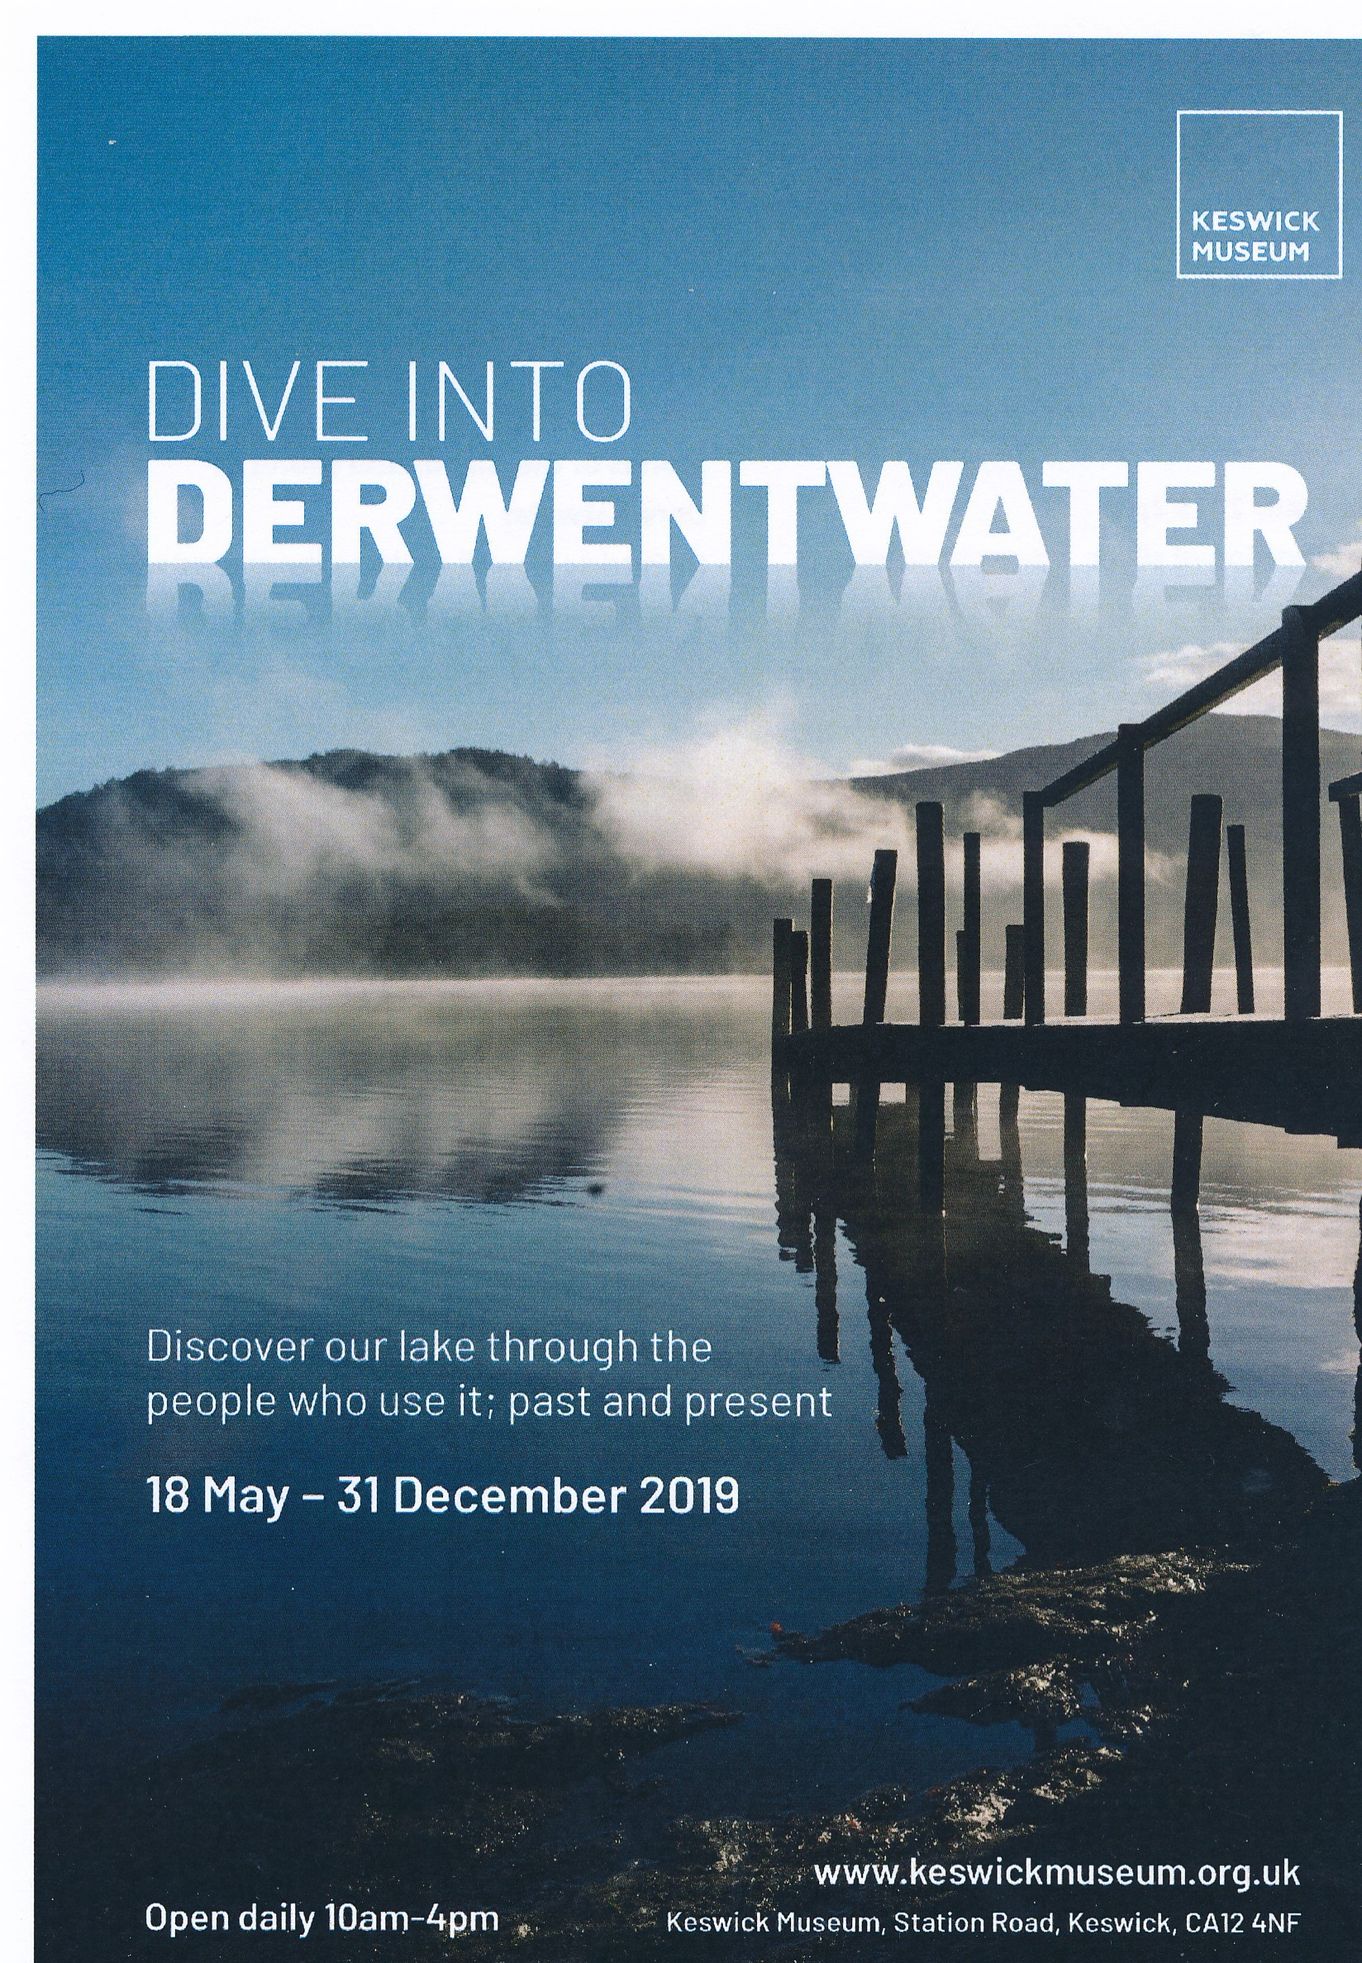 Exhibition: Dive into Derwentwater